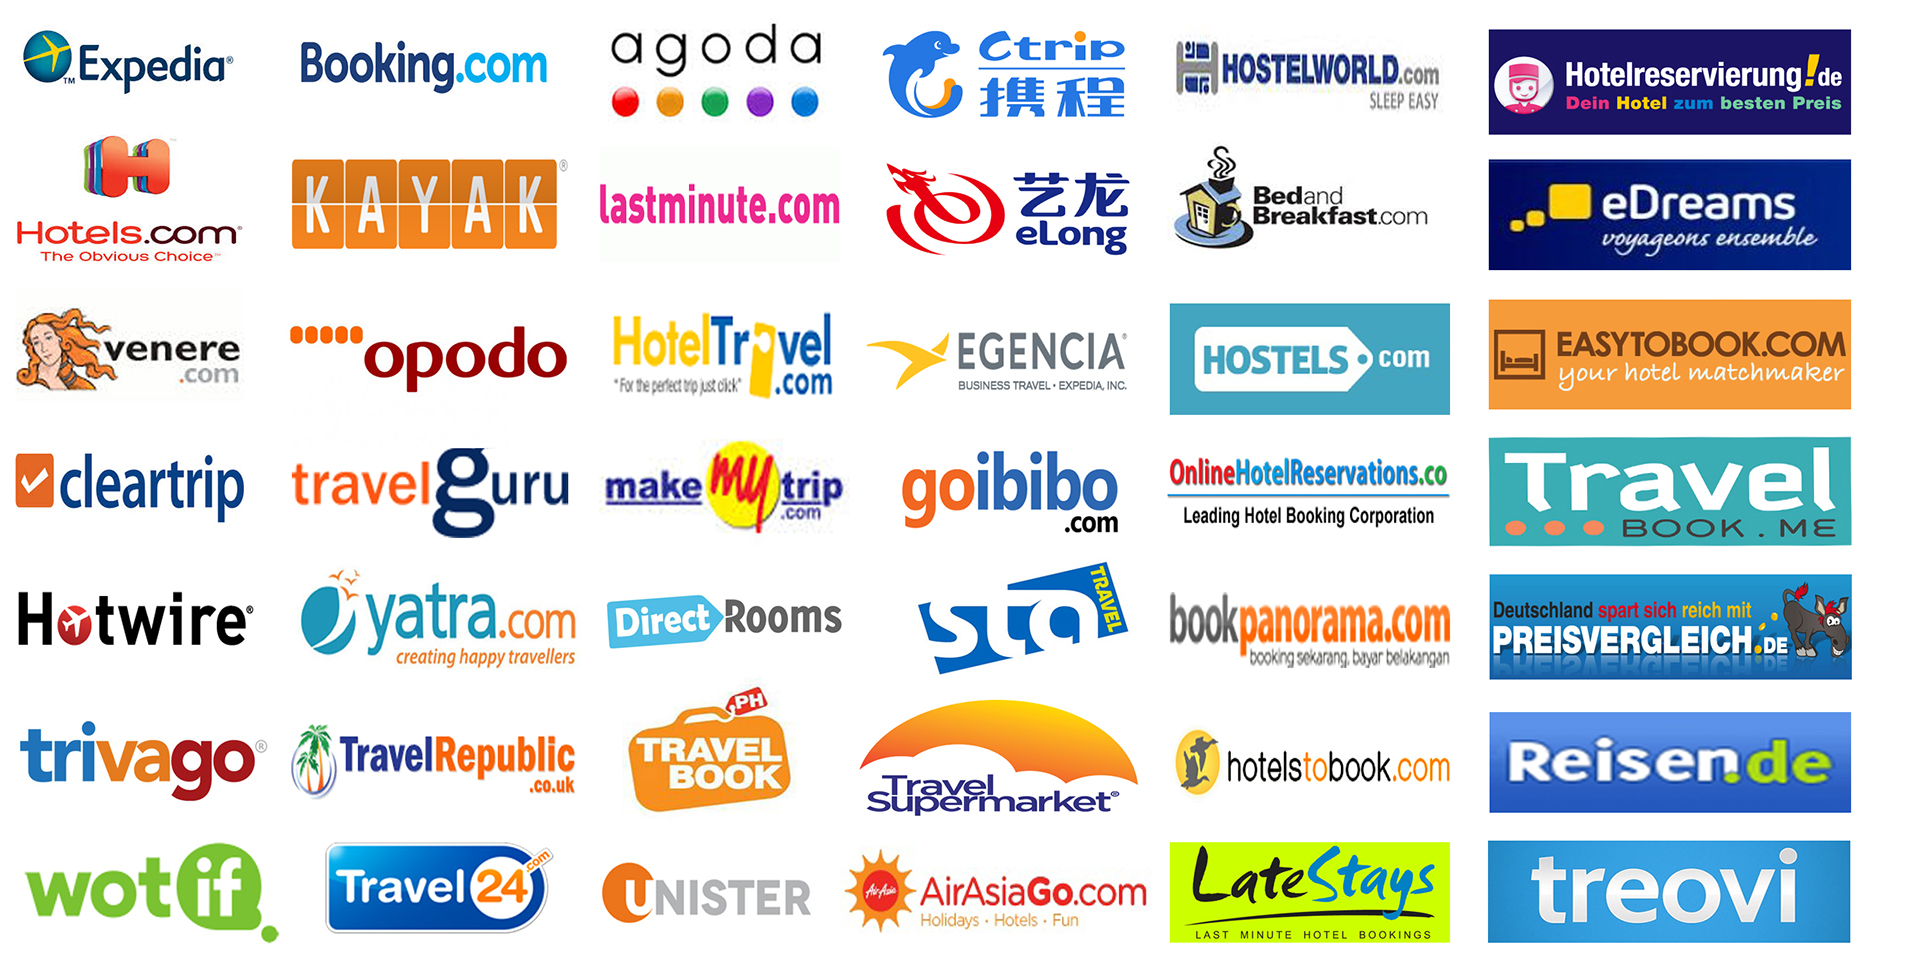 كيف تختار أفضل موقع لحجز الفنادق عبر الإنترنت؟ - خدمة العملاء وخيارات الاتصال بـ Expedia